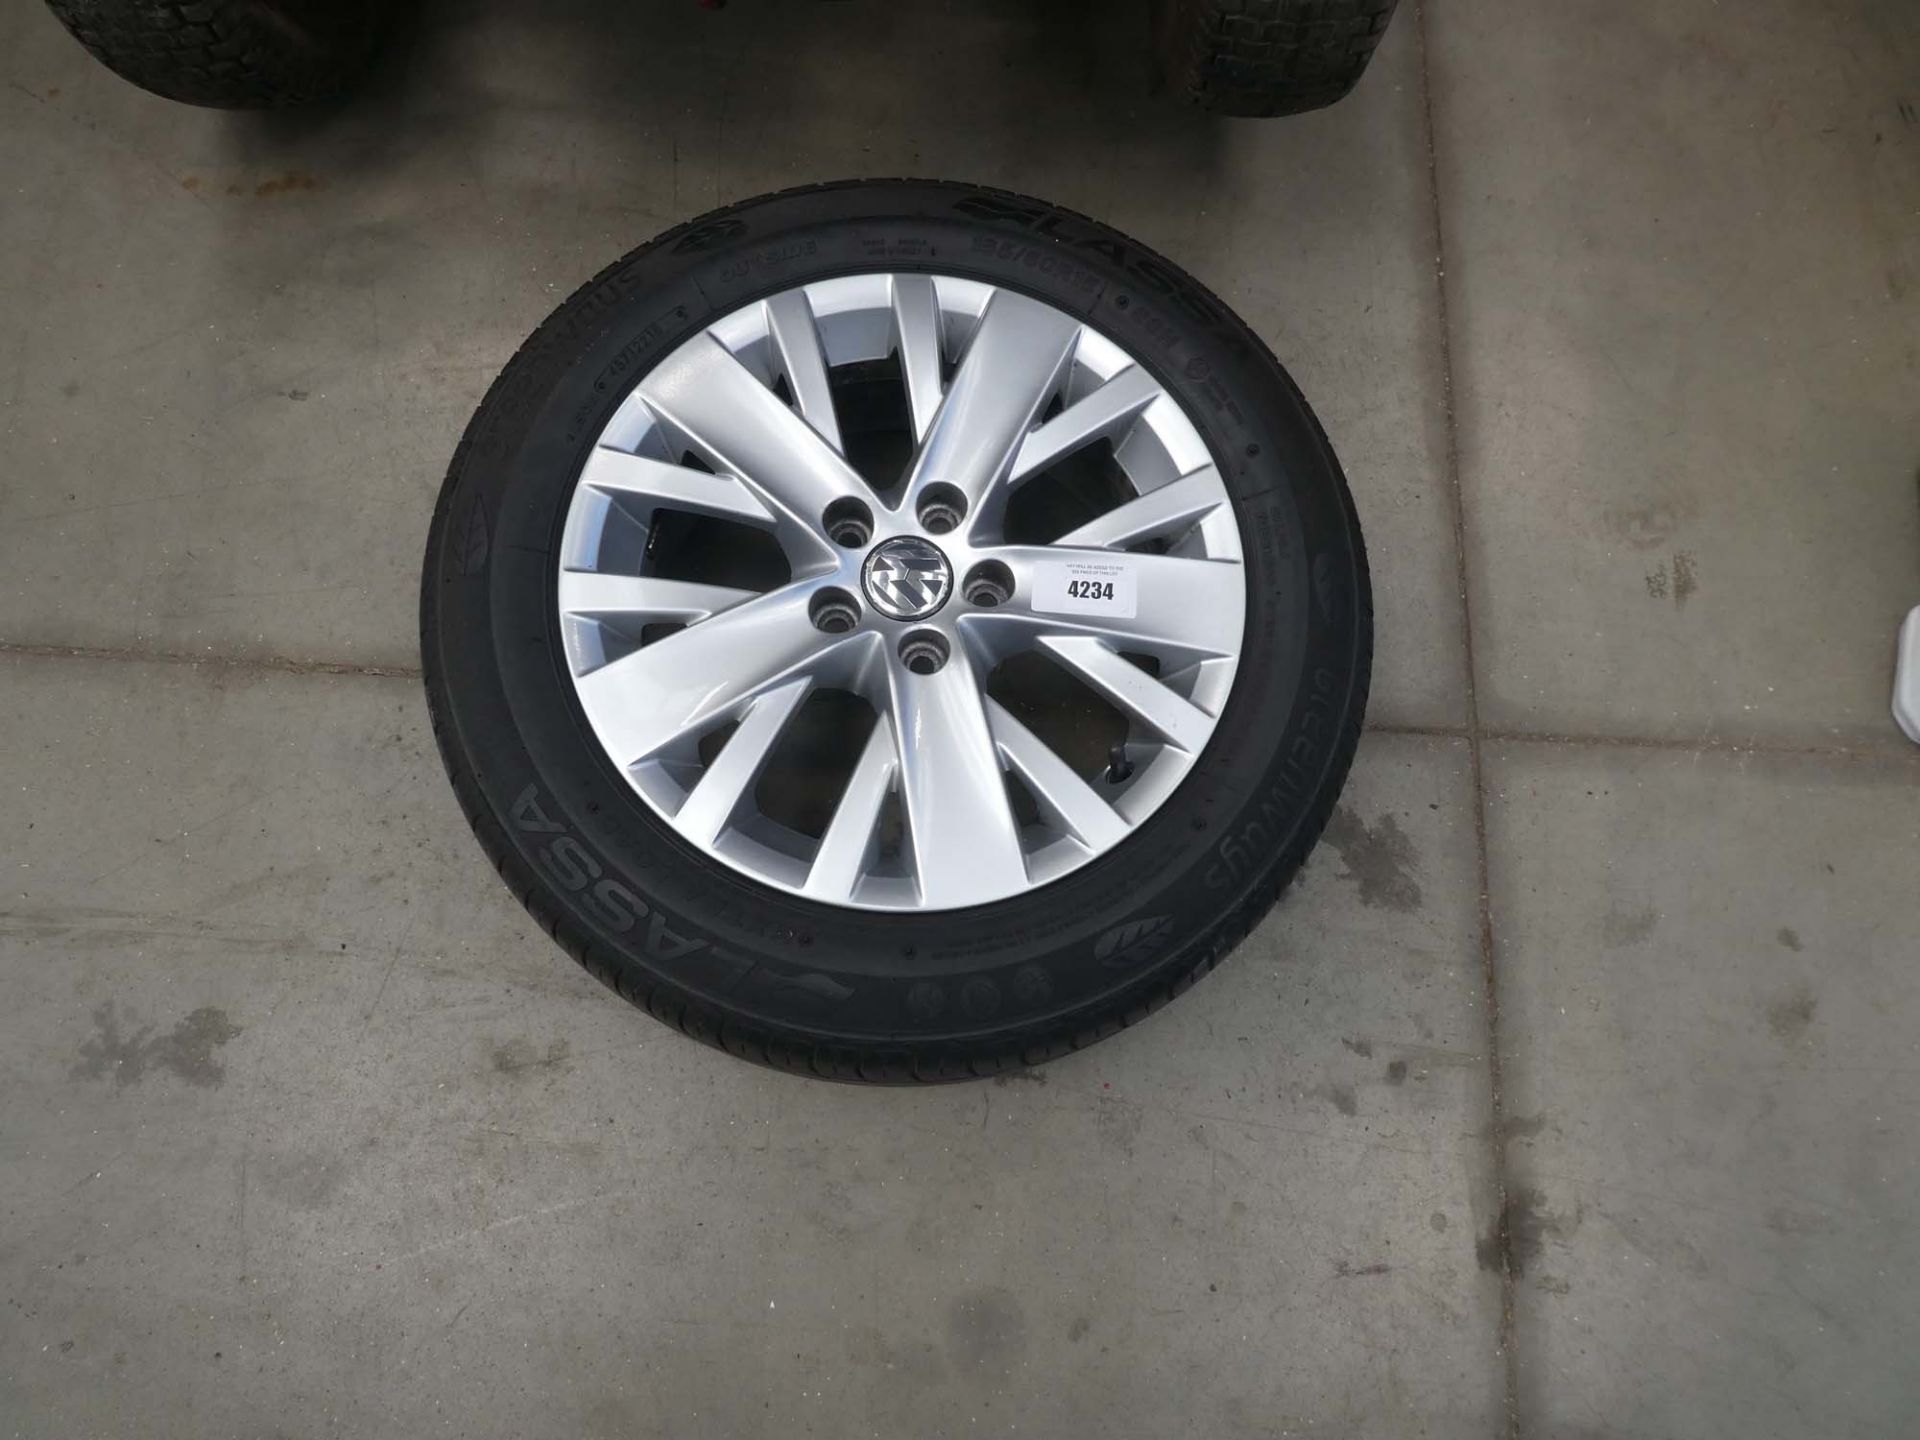 Volkswagen wheel and tyre, size 185/60/15